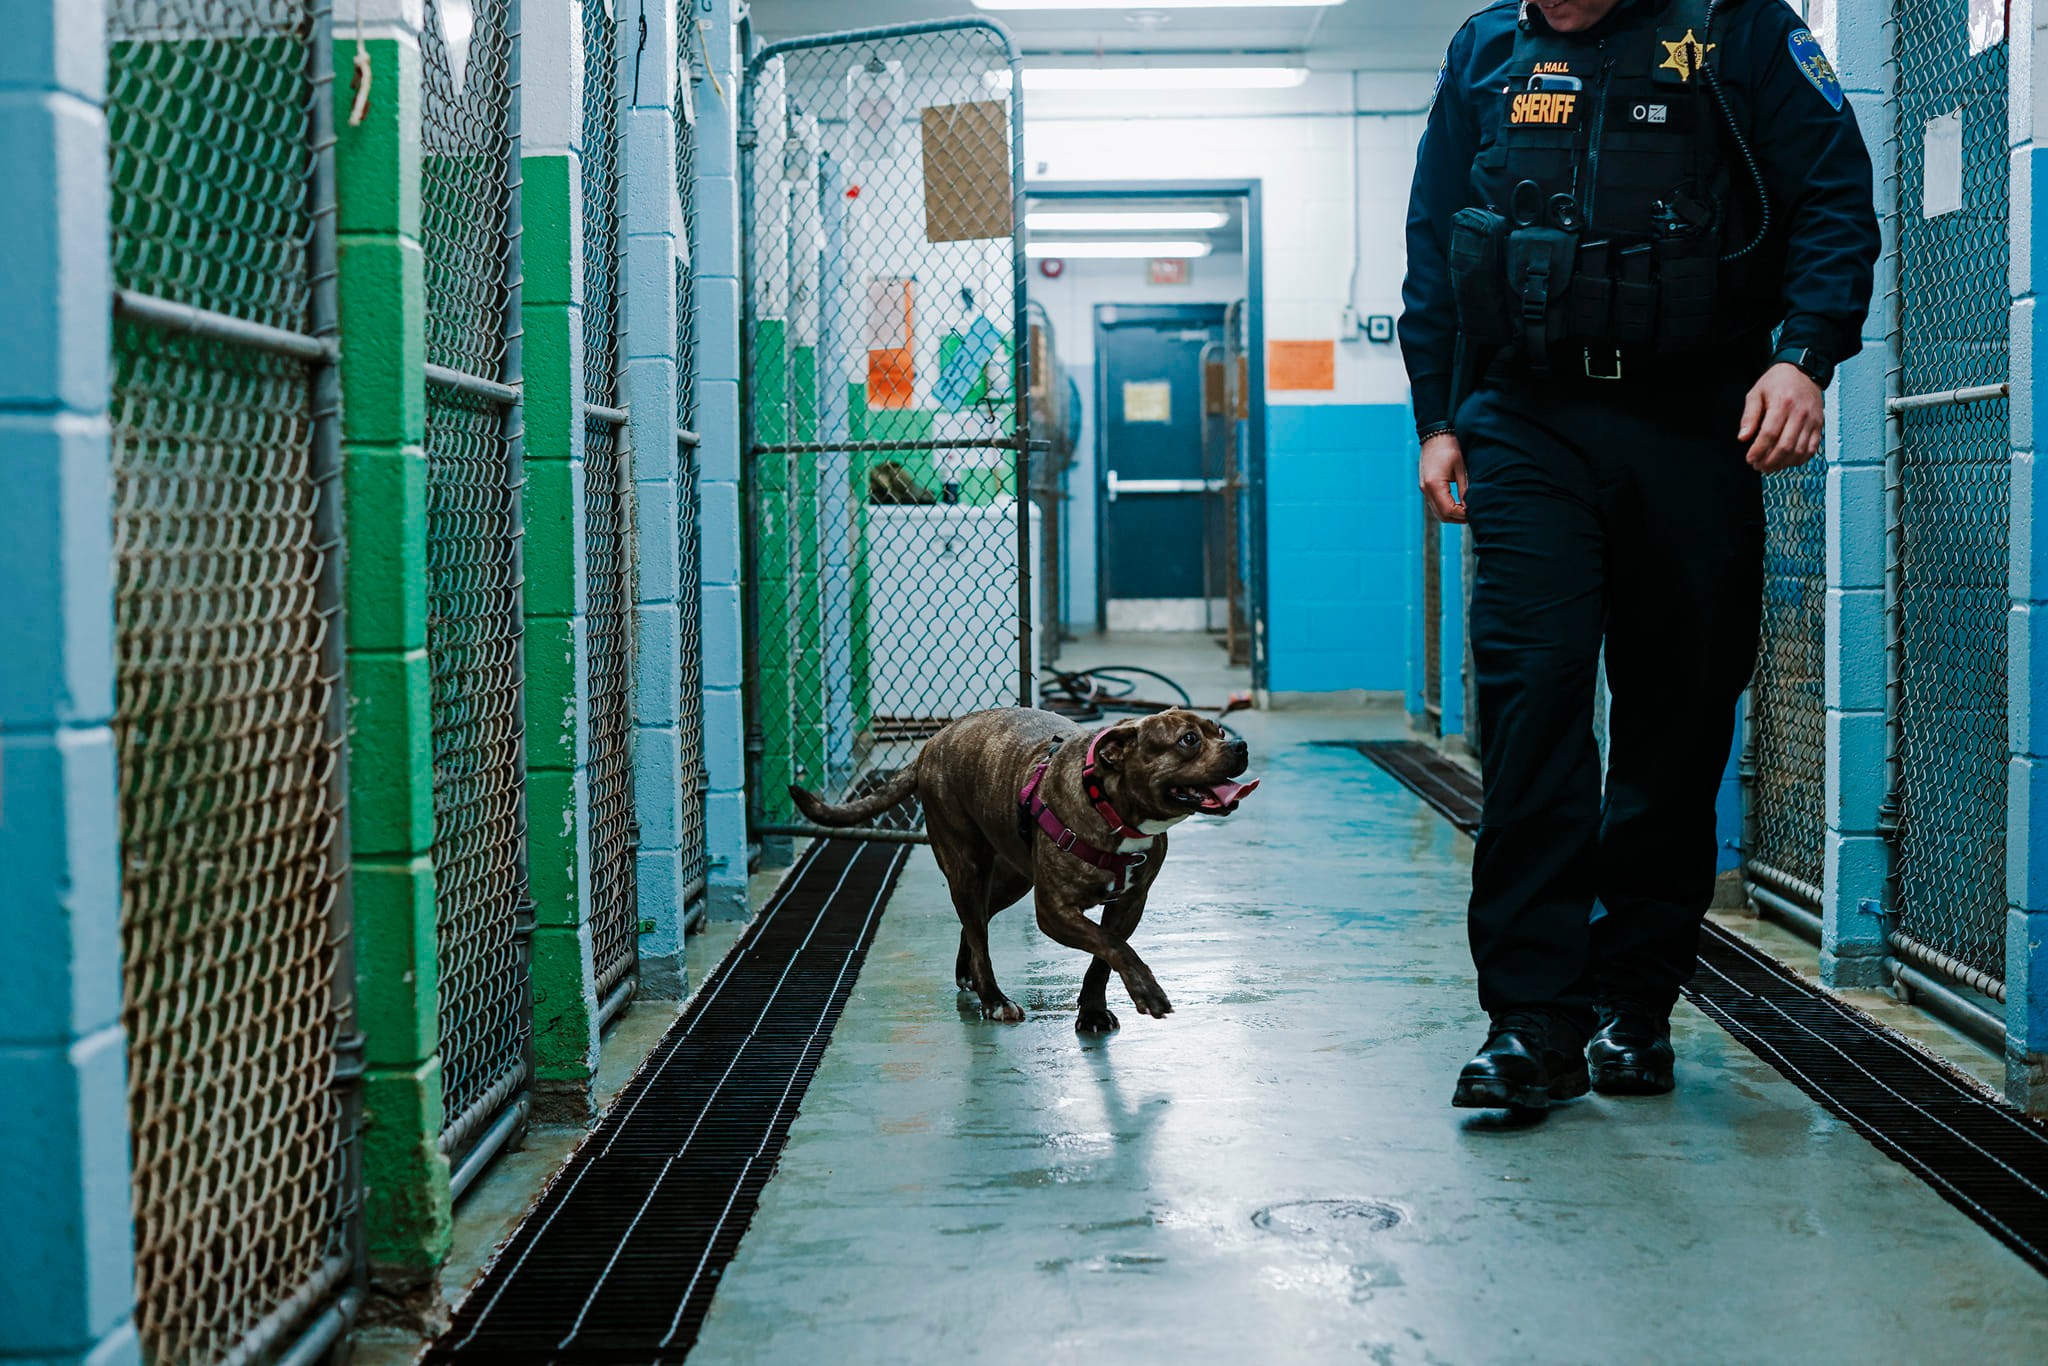 officer and dog walking through jail